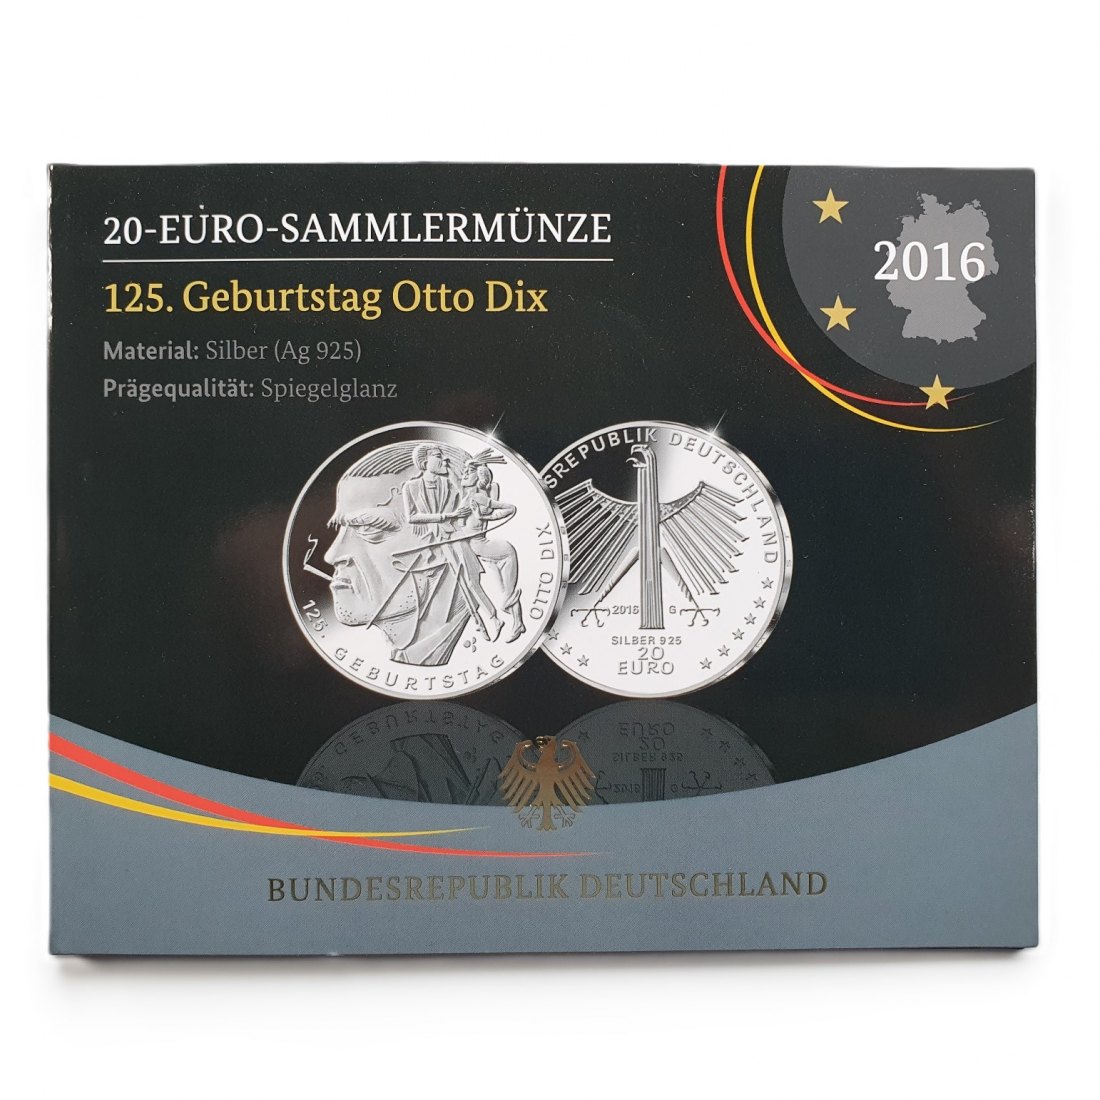  Deutschland 20 Euro 2016 G Sammlermünze 125. Geburtstag Otto Dix 925 Silber Spiegelglanz   